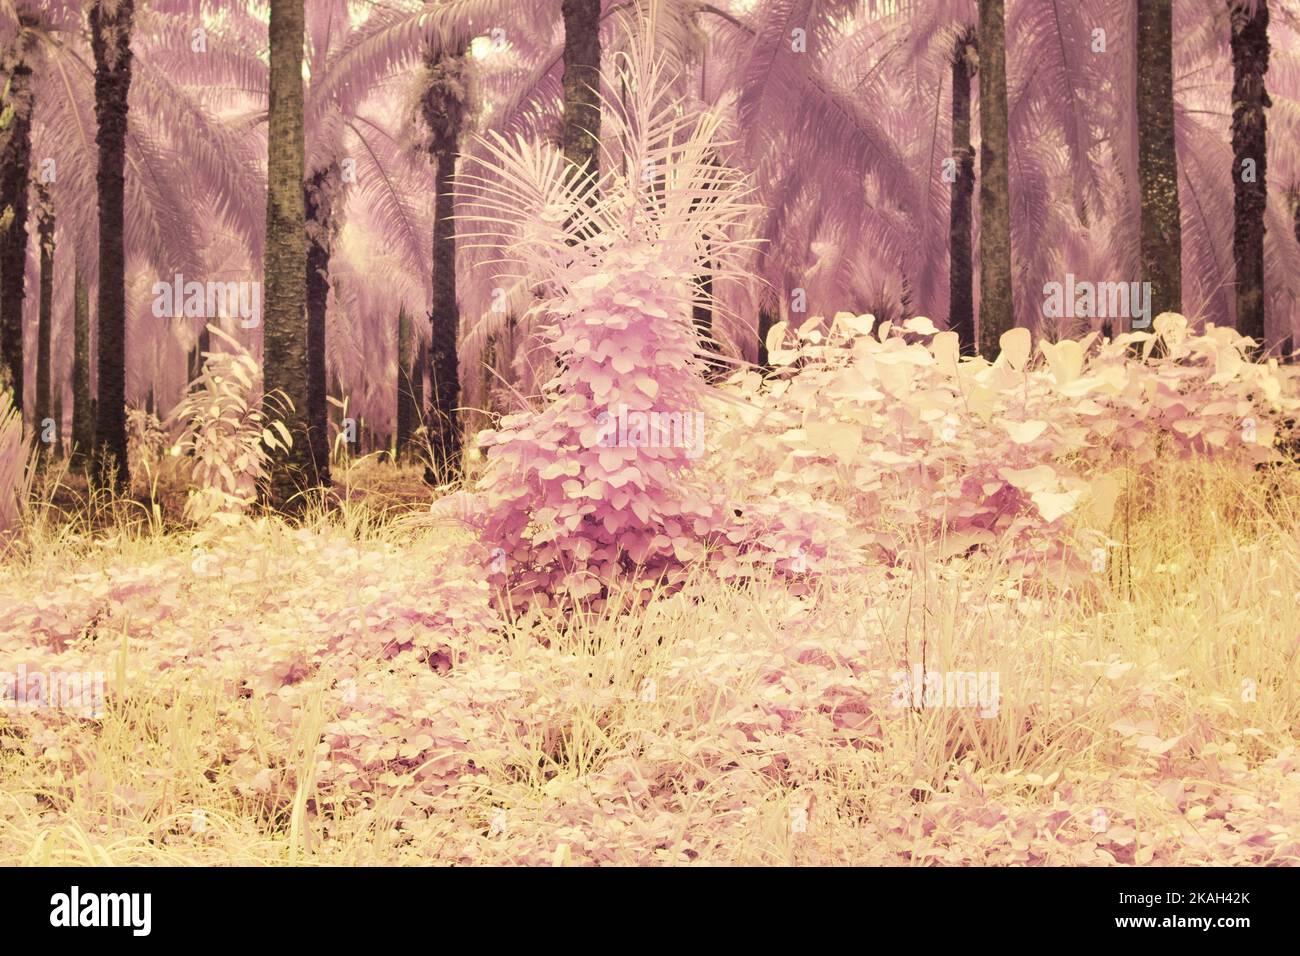 immagine a infrarossi della vegetazione selvaggia strisciante e rampicante della piantagione Foto Stock